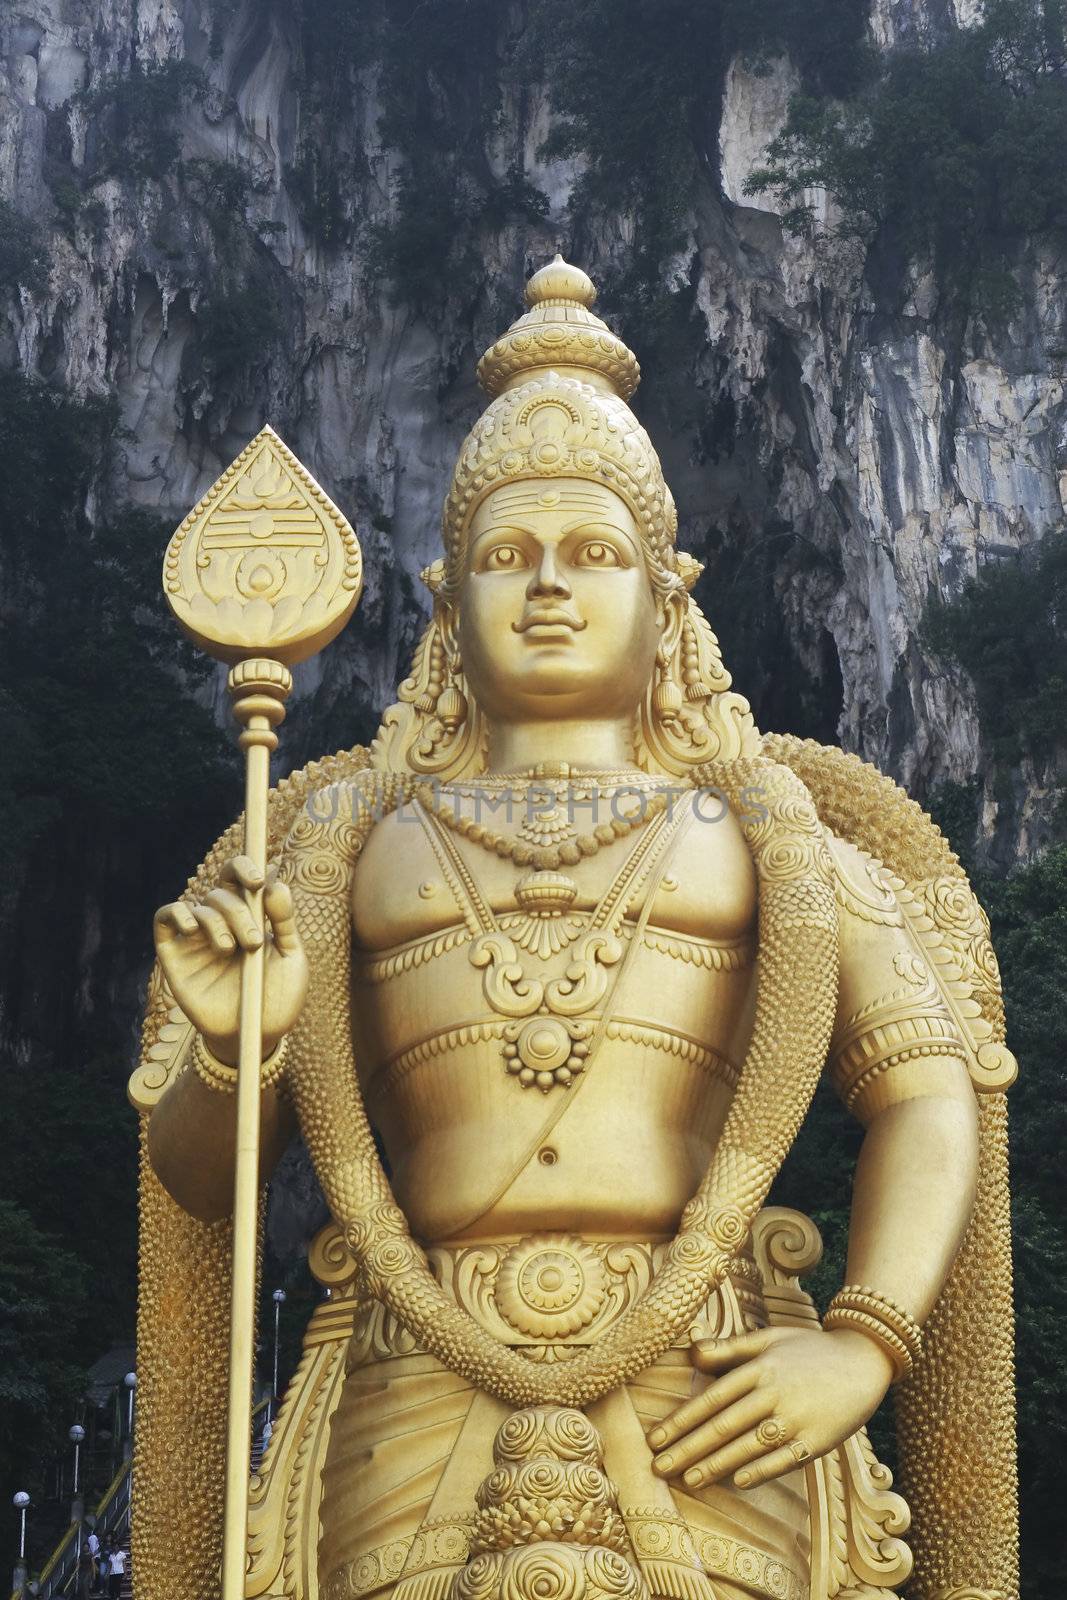 Giant statue of Lord Murugan at Batu Caves temple in Kuala Lumpur, Malaysia.